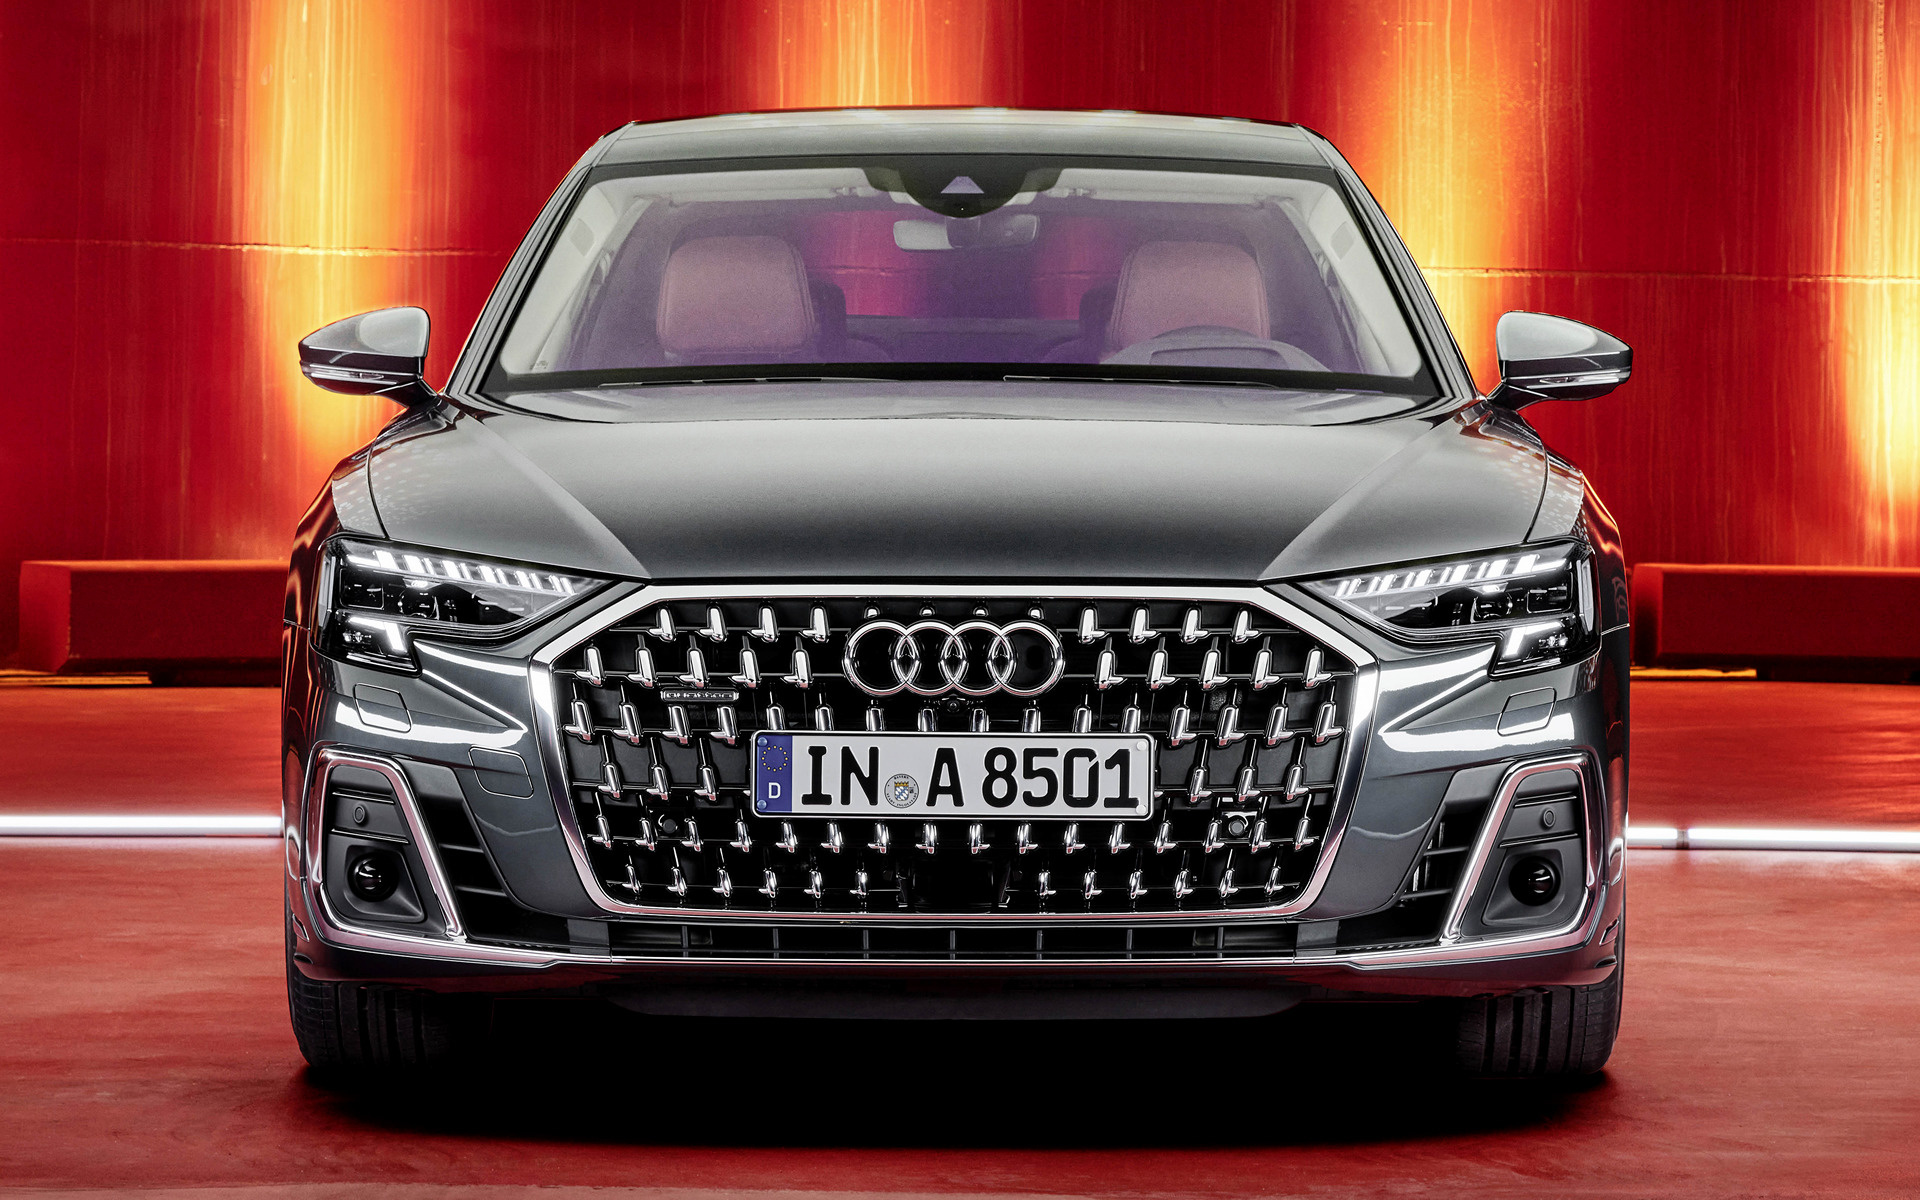 2021 Audi A8 L - Fondos de Pantalla e Imágenes en HD | Car Pixel